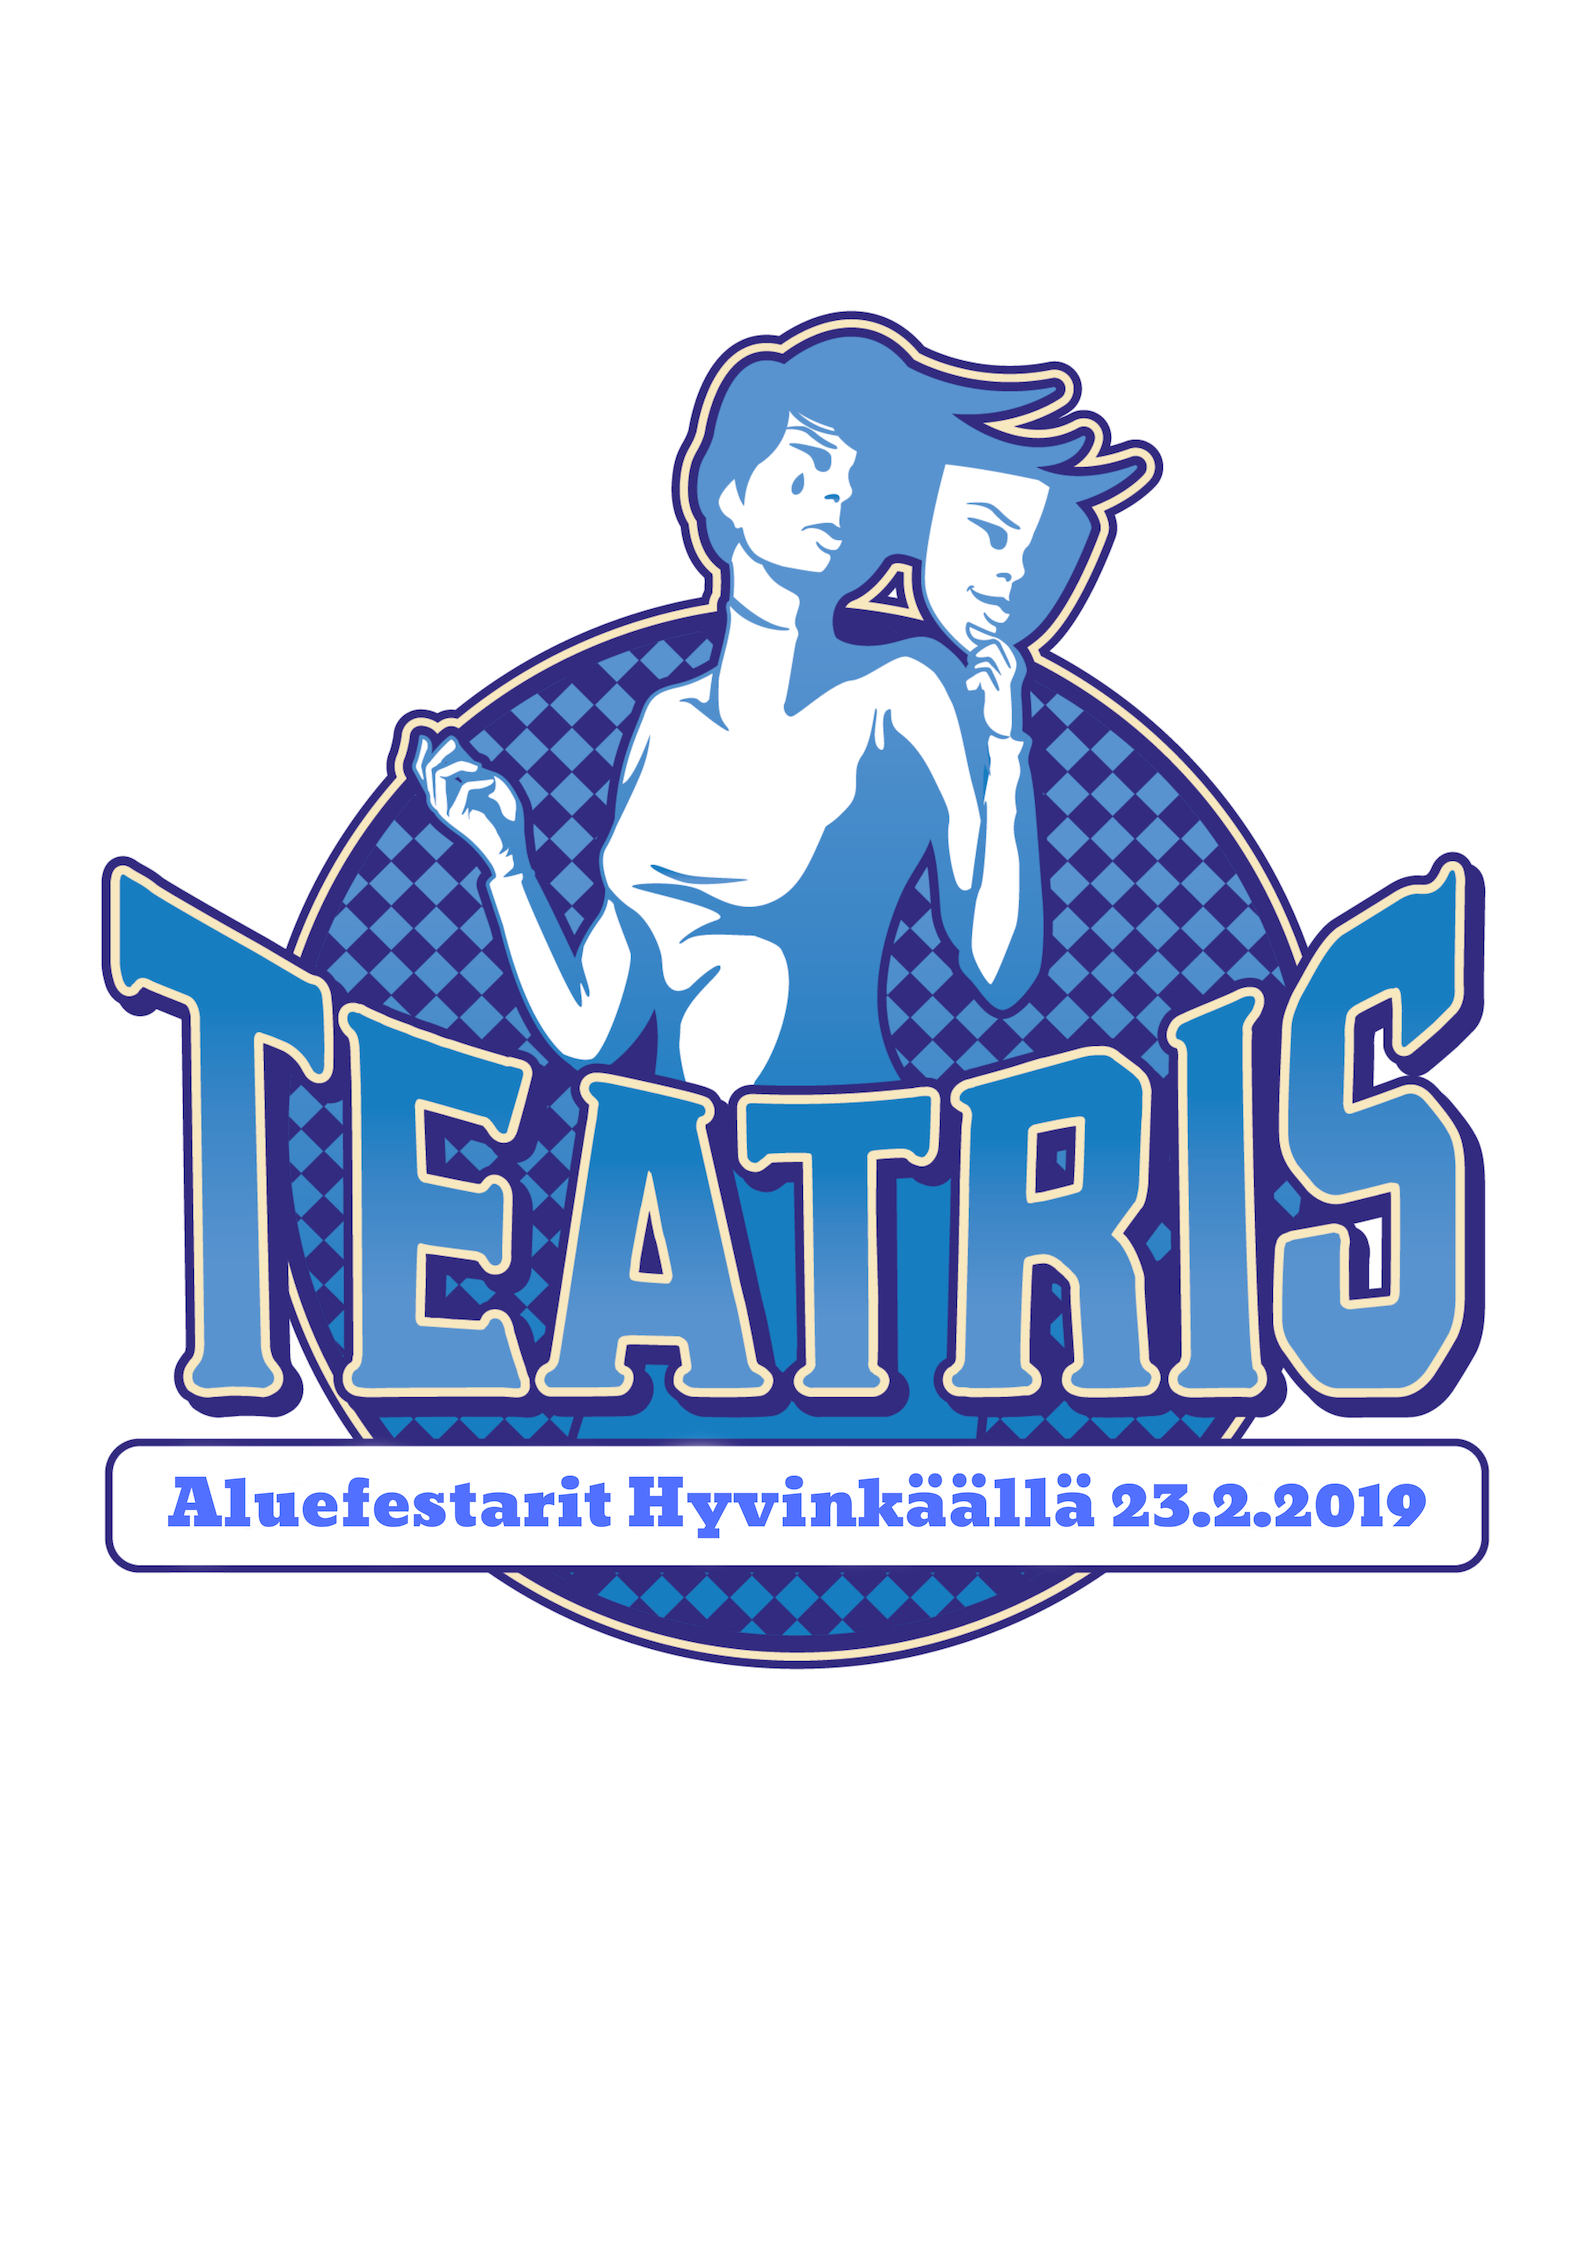 Logon kuvassa nuori pitelee teatterinaamiota ja tekstinä lukee: TEatris, Aluefesarit Hyvinkäällä 23.2.2019